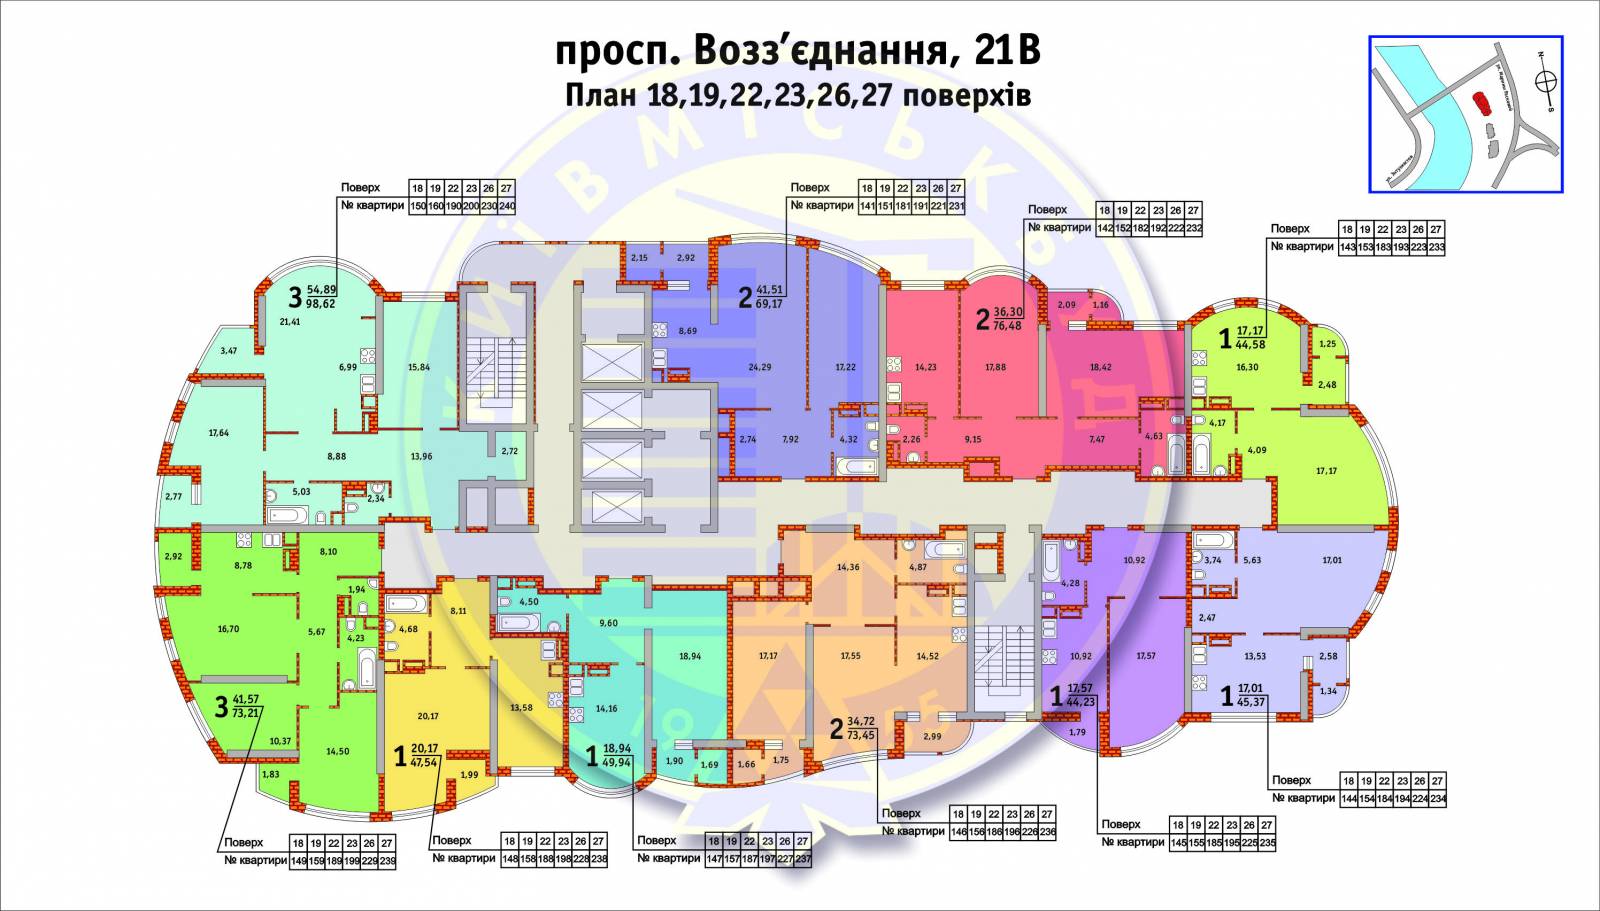 Поэтажный план Воссоединения 21в